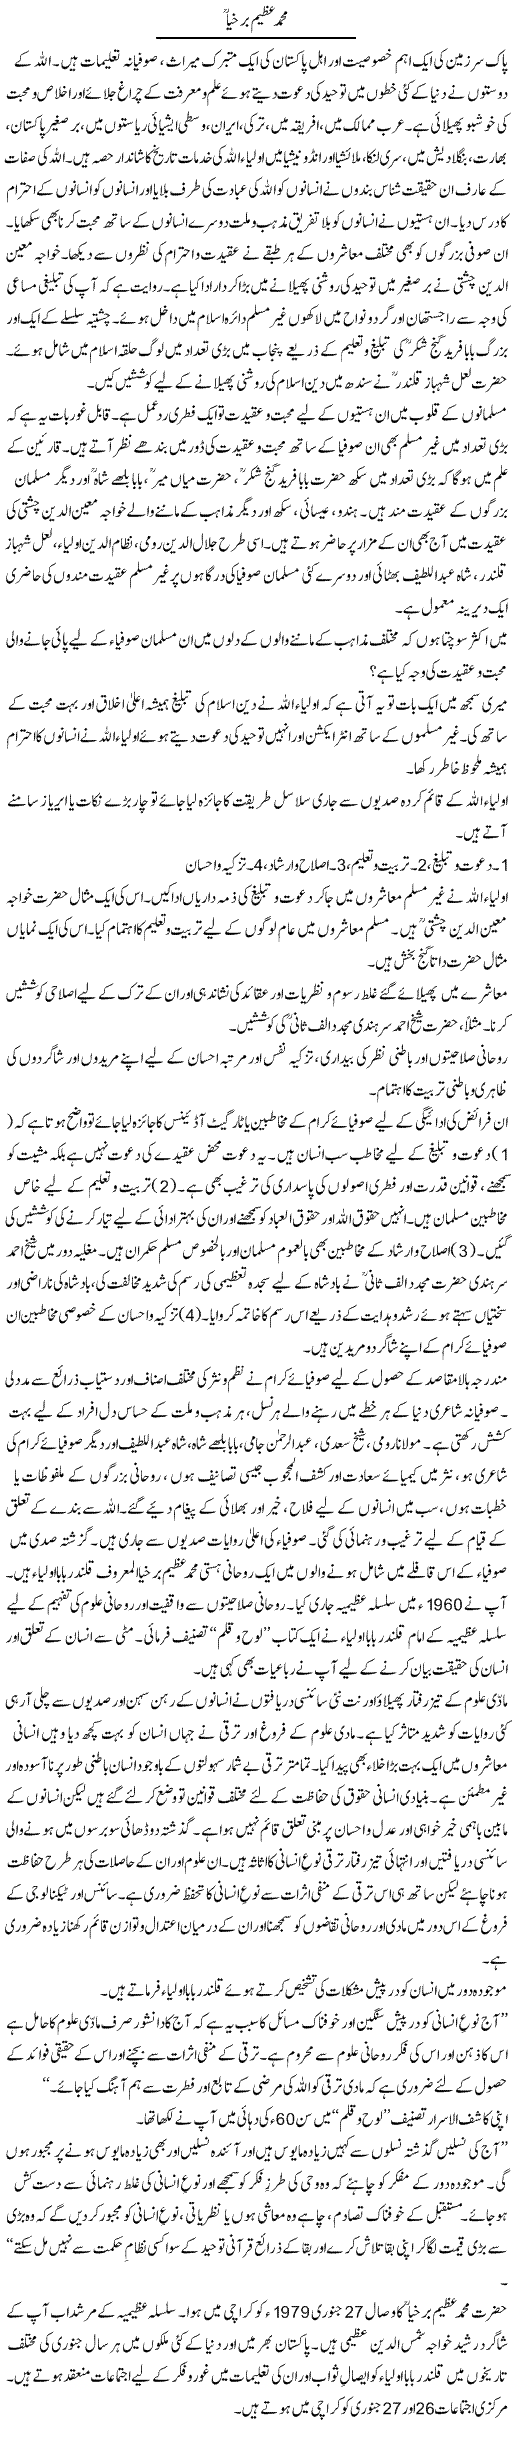 Muhammad Azeem Barkhya | Dr. Waqar Yousuf Azeemi | Daily Urdu Columns